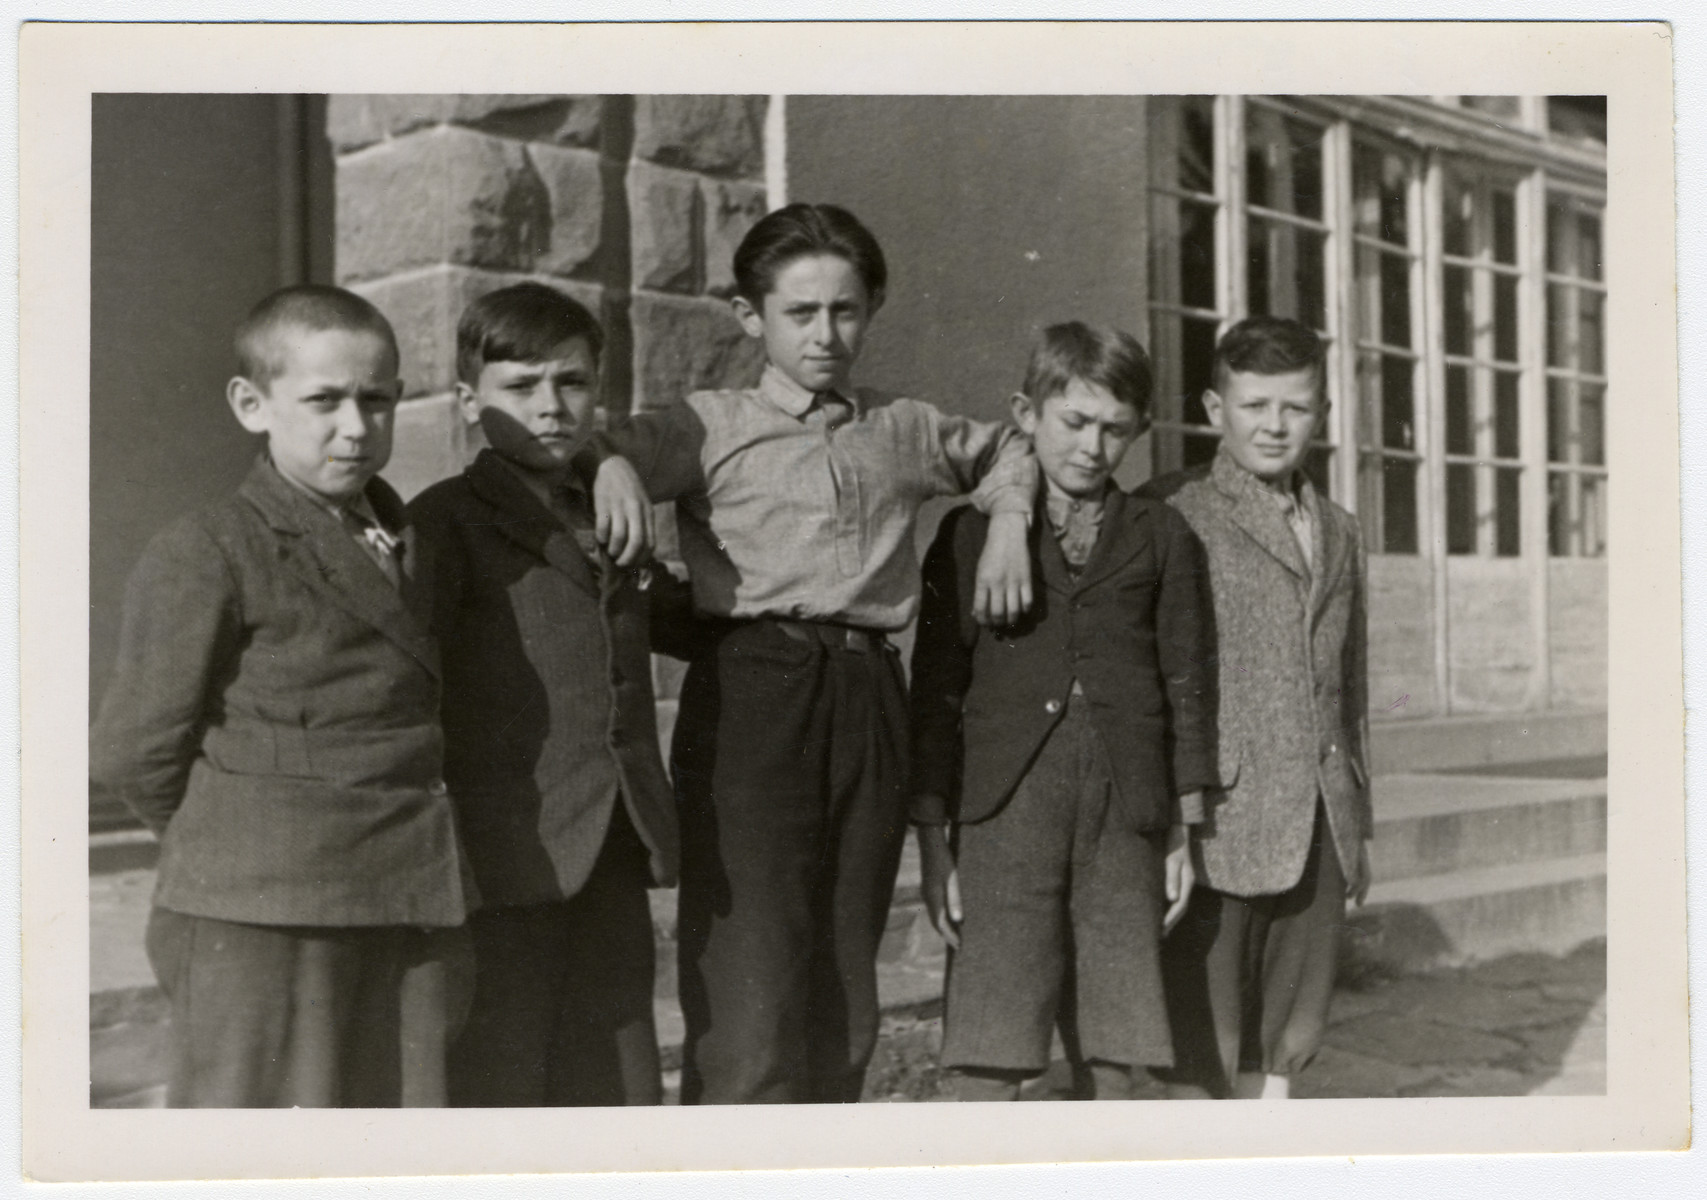 Portrait of young children in the Ziegenhain displaced persons' camp.

Pictured are Nachum Barvinski, Max Millen, Mischa Schneider, Felix Rickower, and Ruman Ichuda.